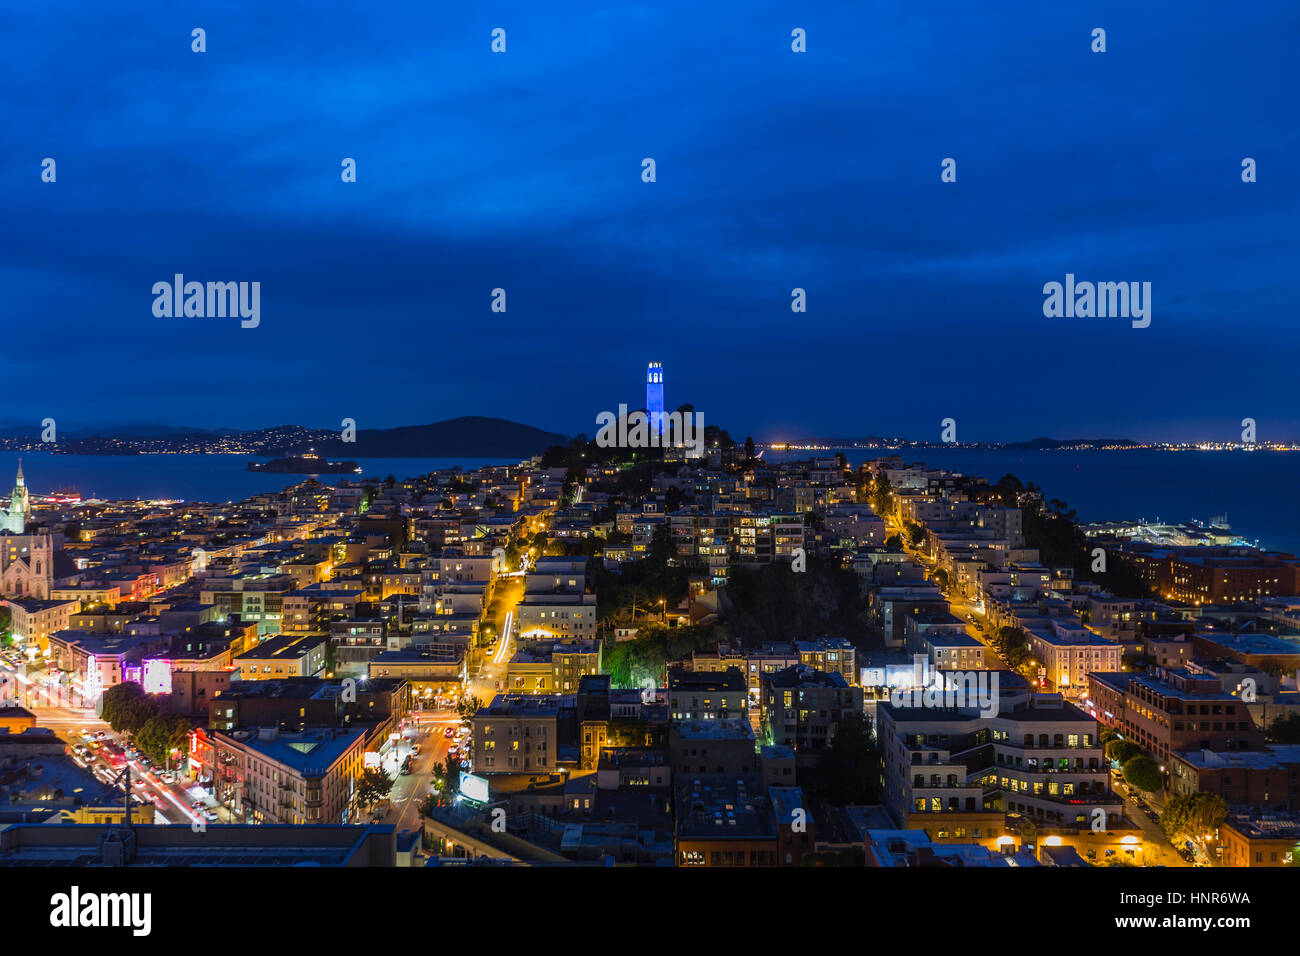 San Francisco, Californie, USA - 23 avril 2016 - la Coit Tower, San Francisco Bay et North Beach community au crépuscule. Banque D'Images